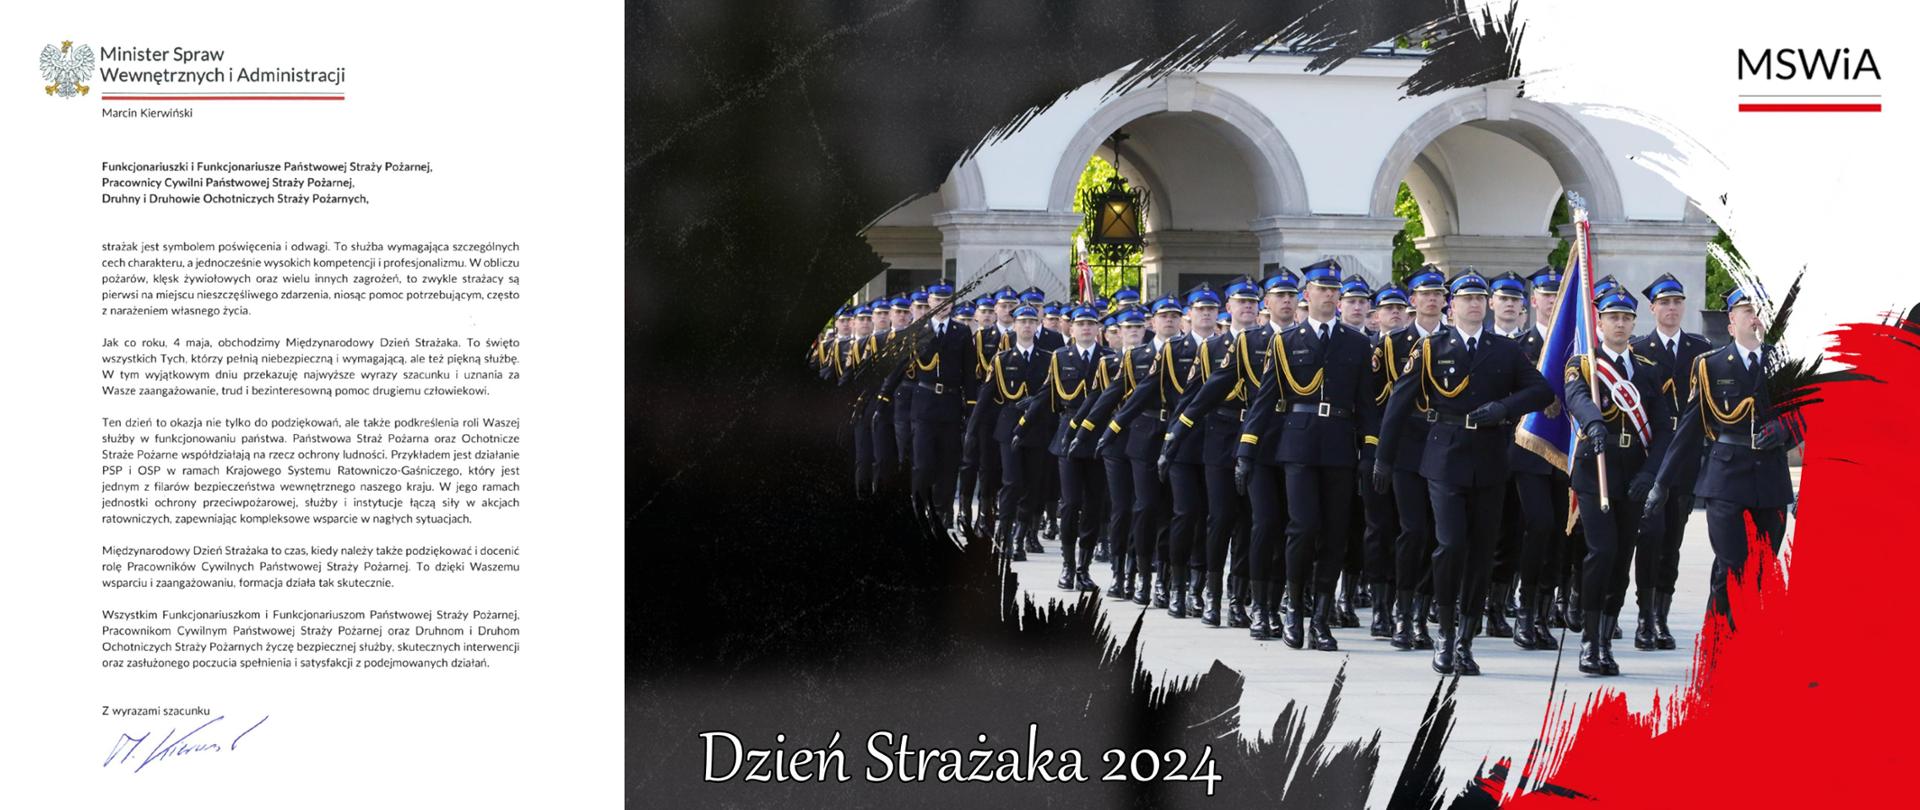 Życzenia MSWiA z okazji Dnia Strażaka 2014 r.